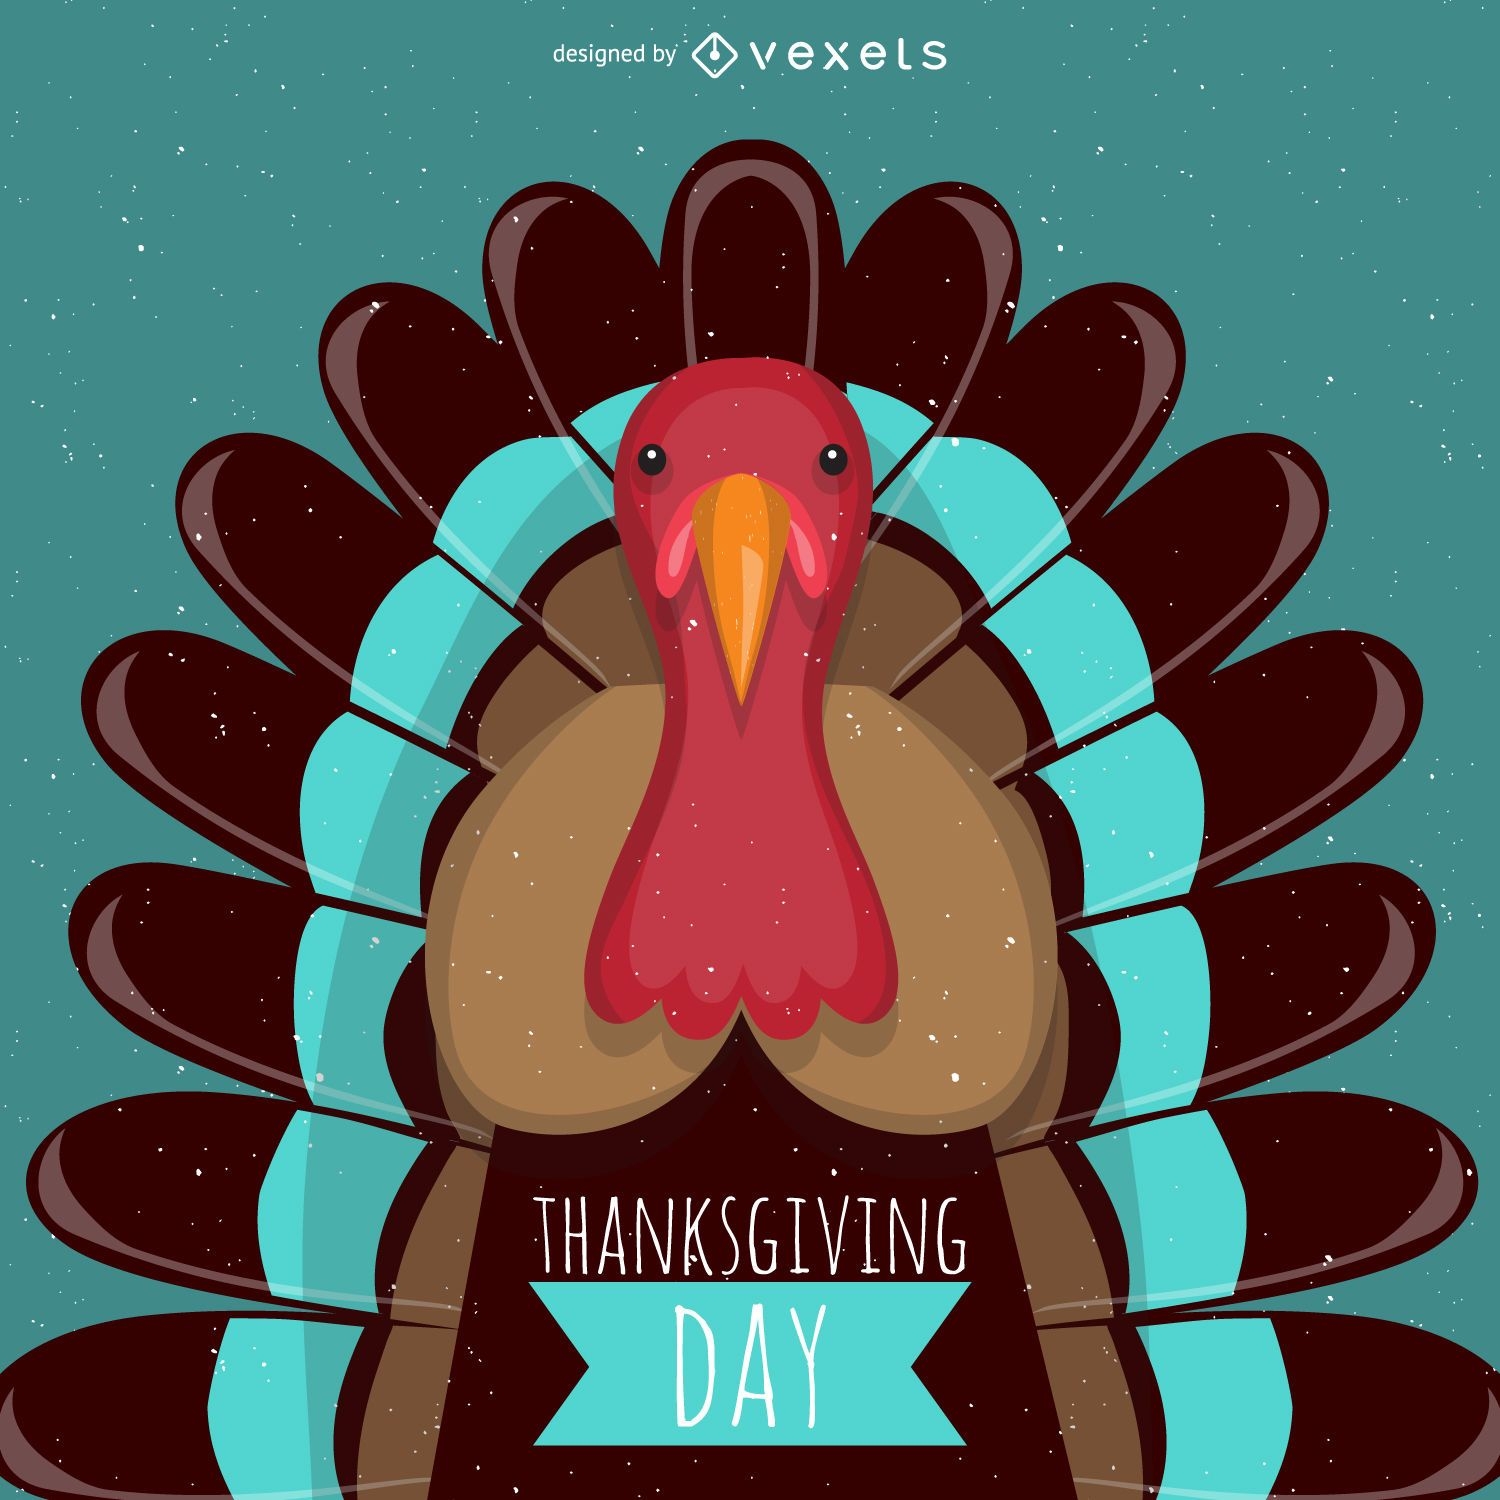 Thanksgiving turkey illustration